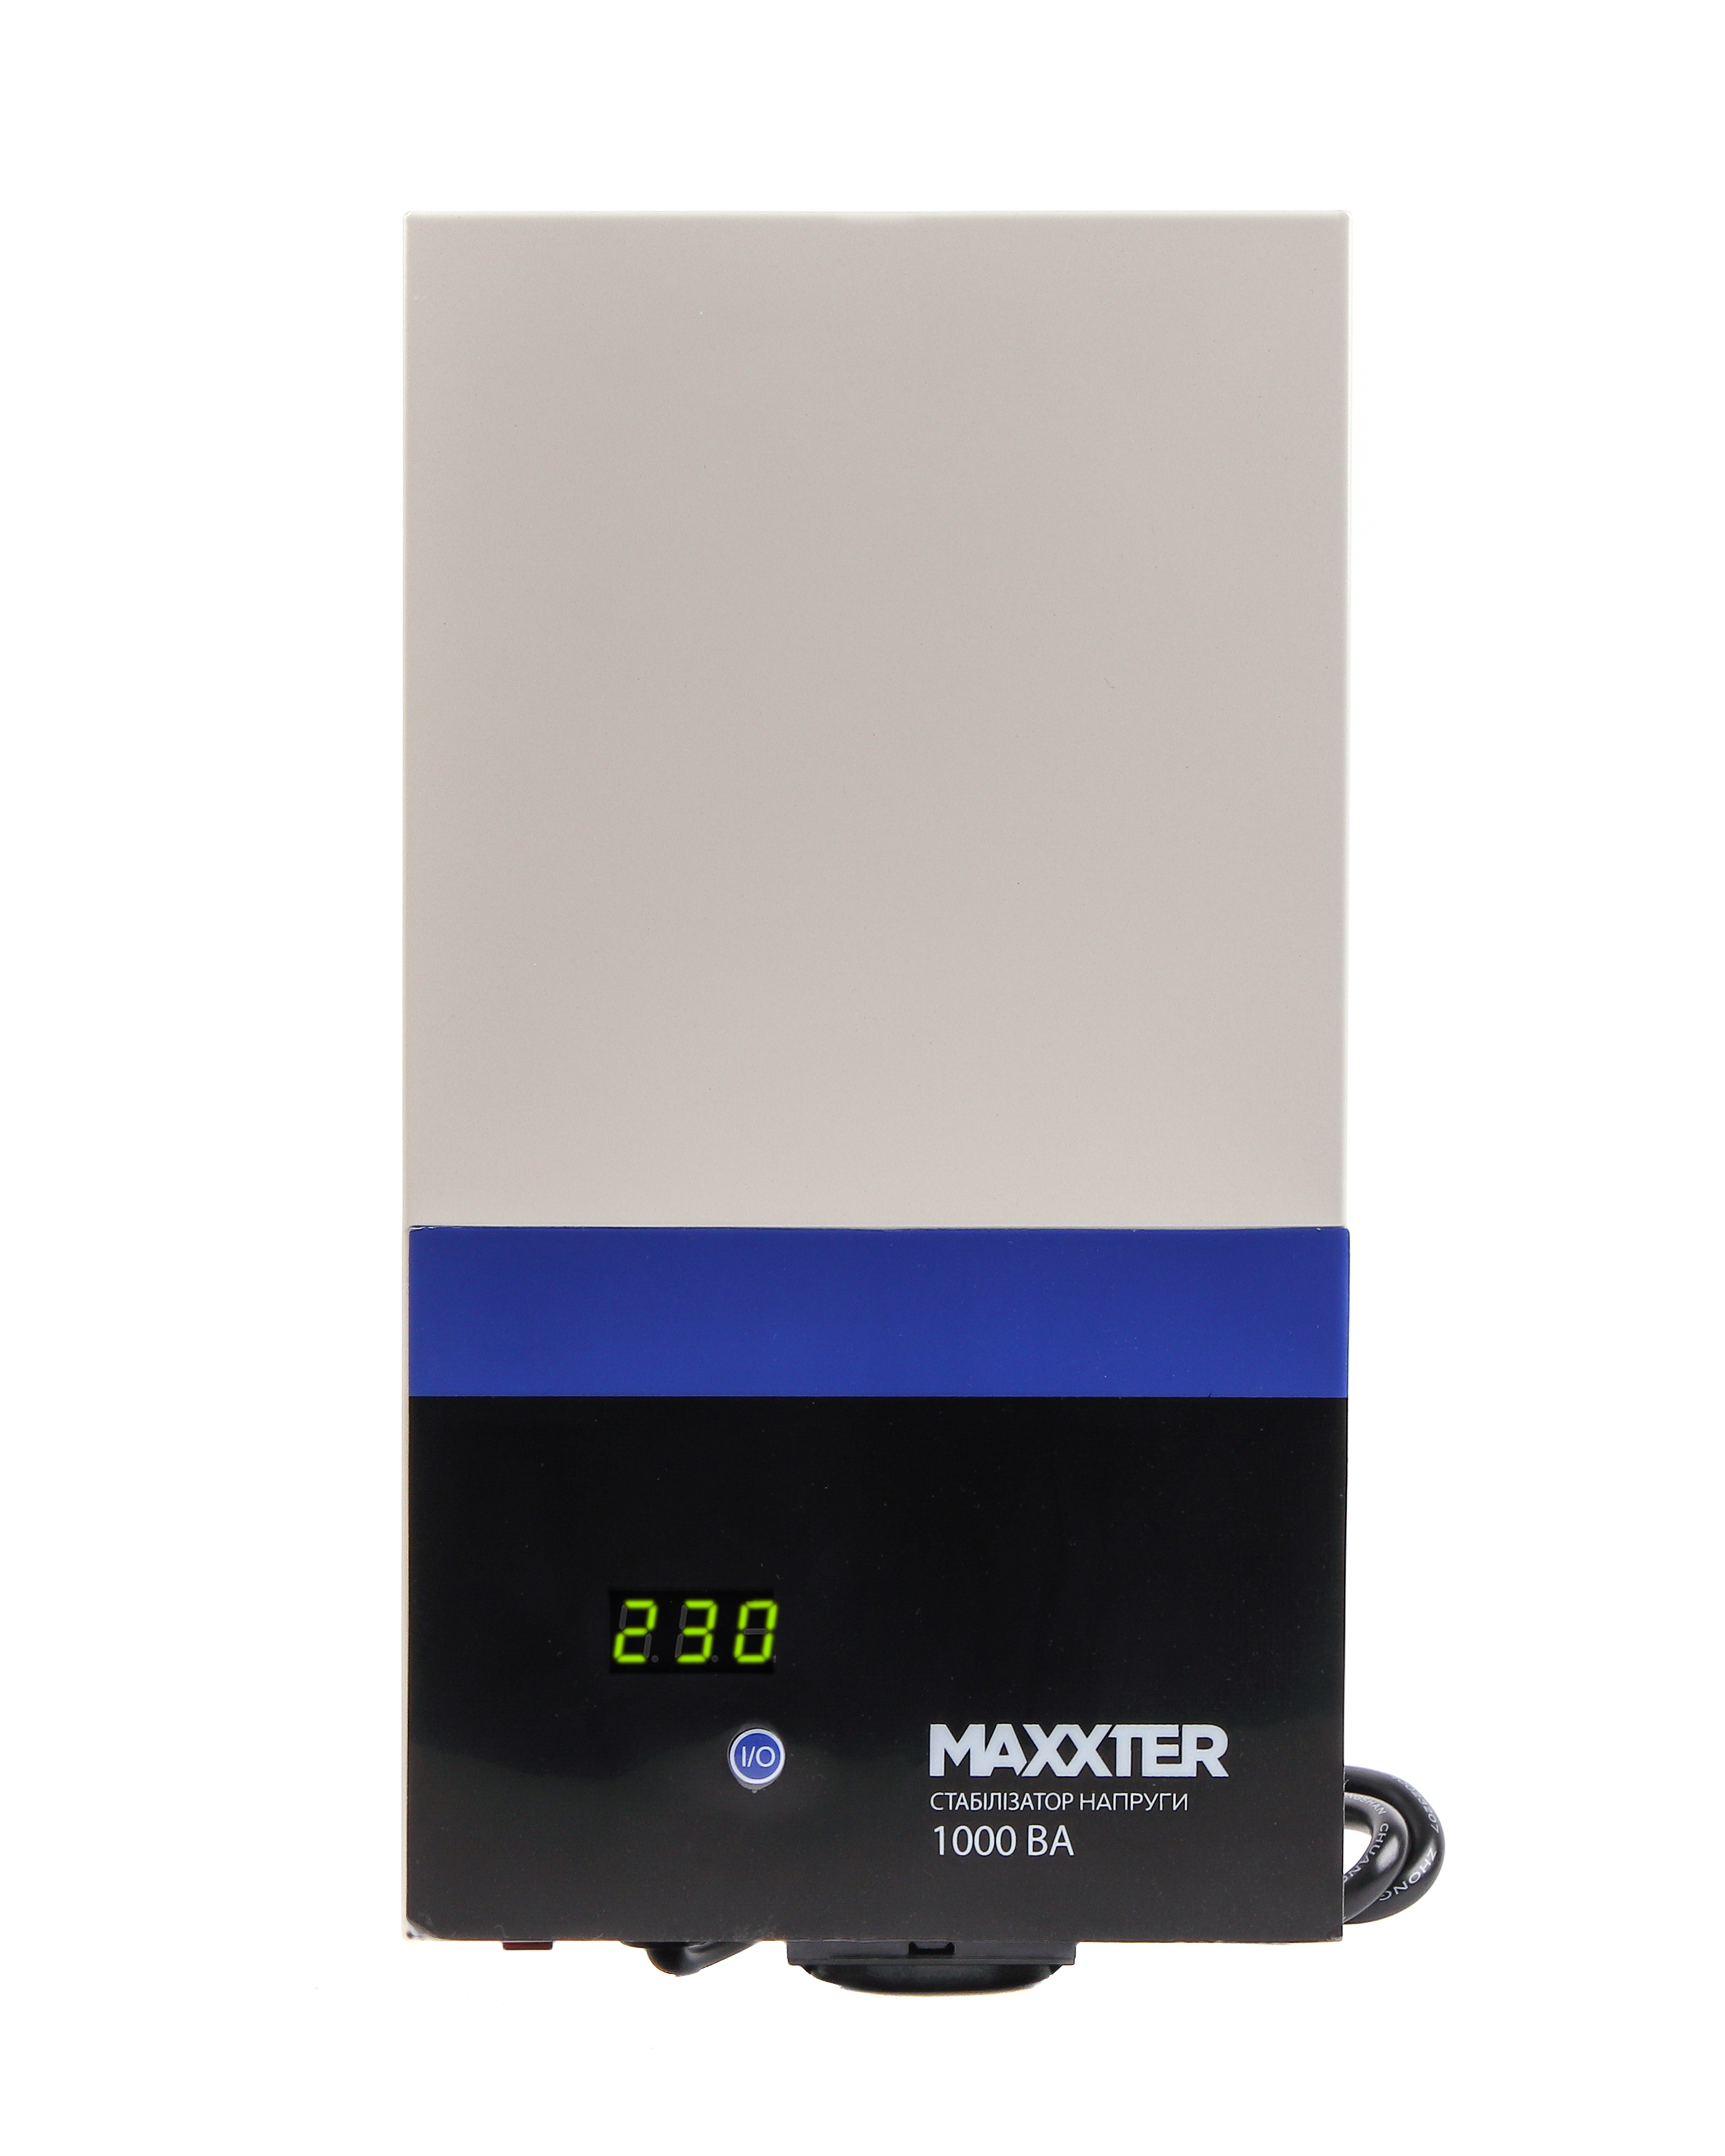 Стабилизатор повышенного напряжения Maxxter MX-AVR-DW1000-01